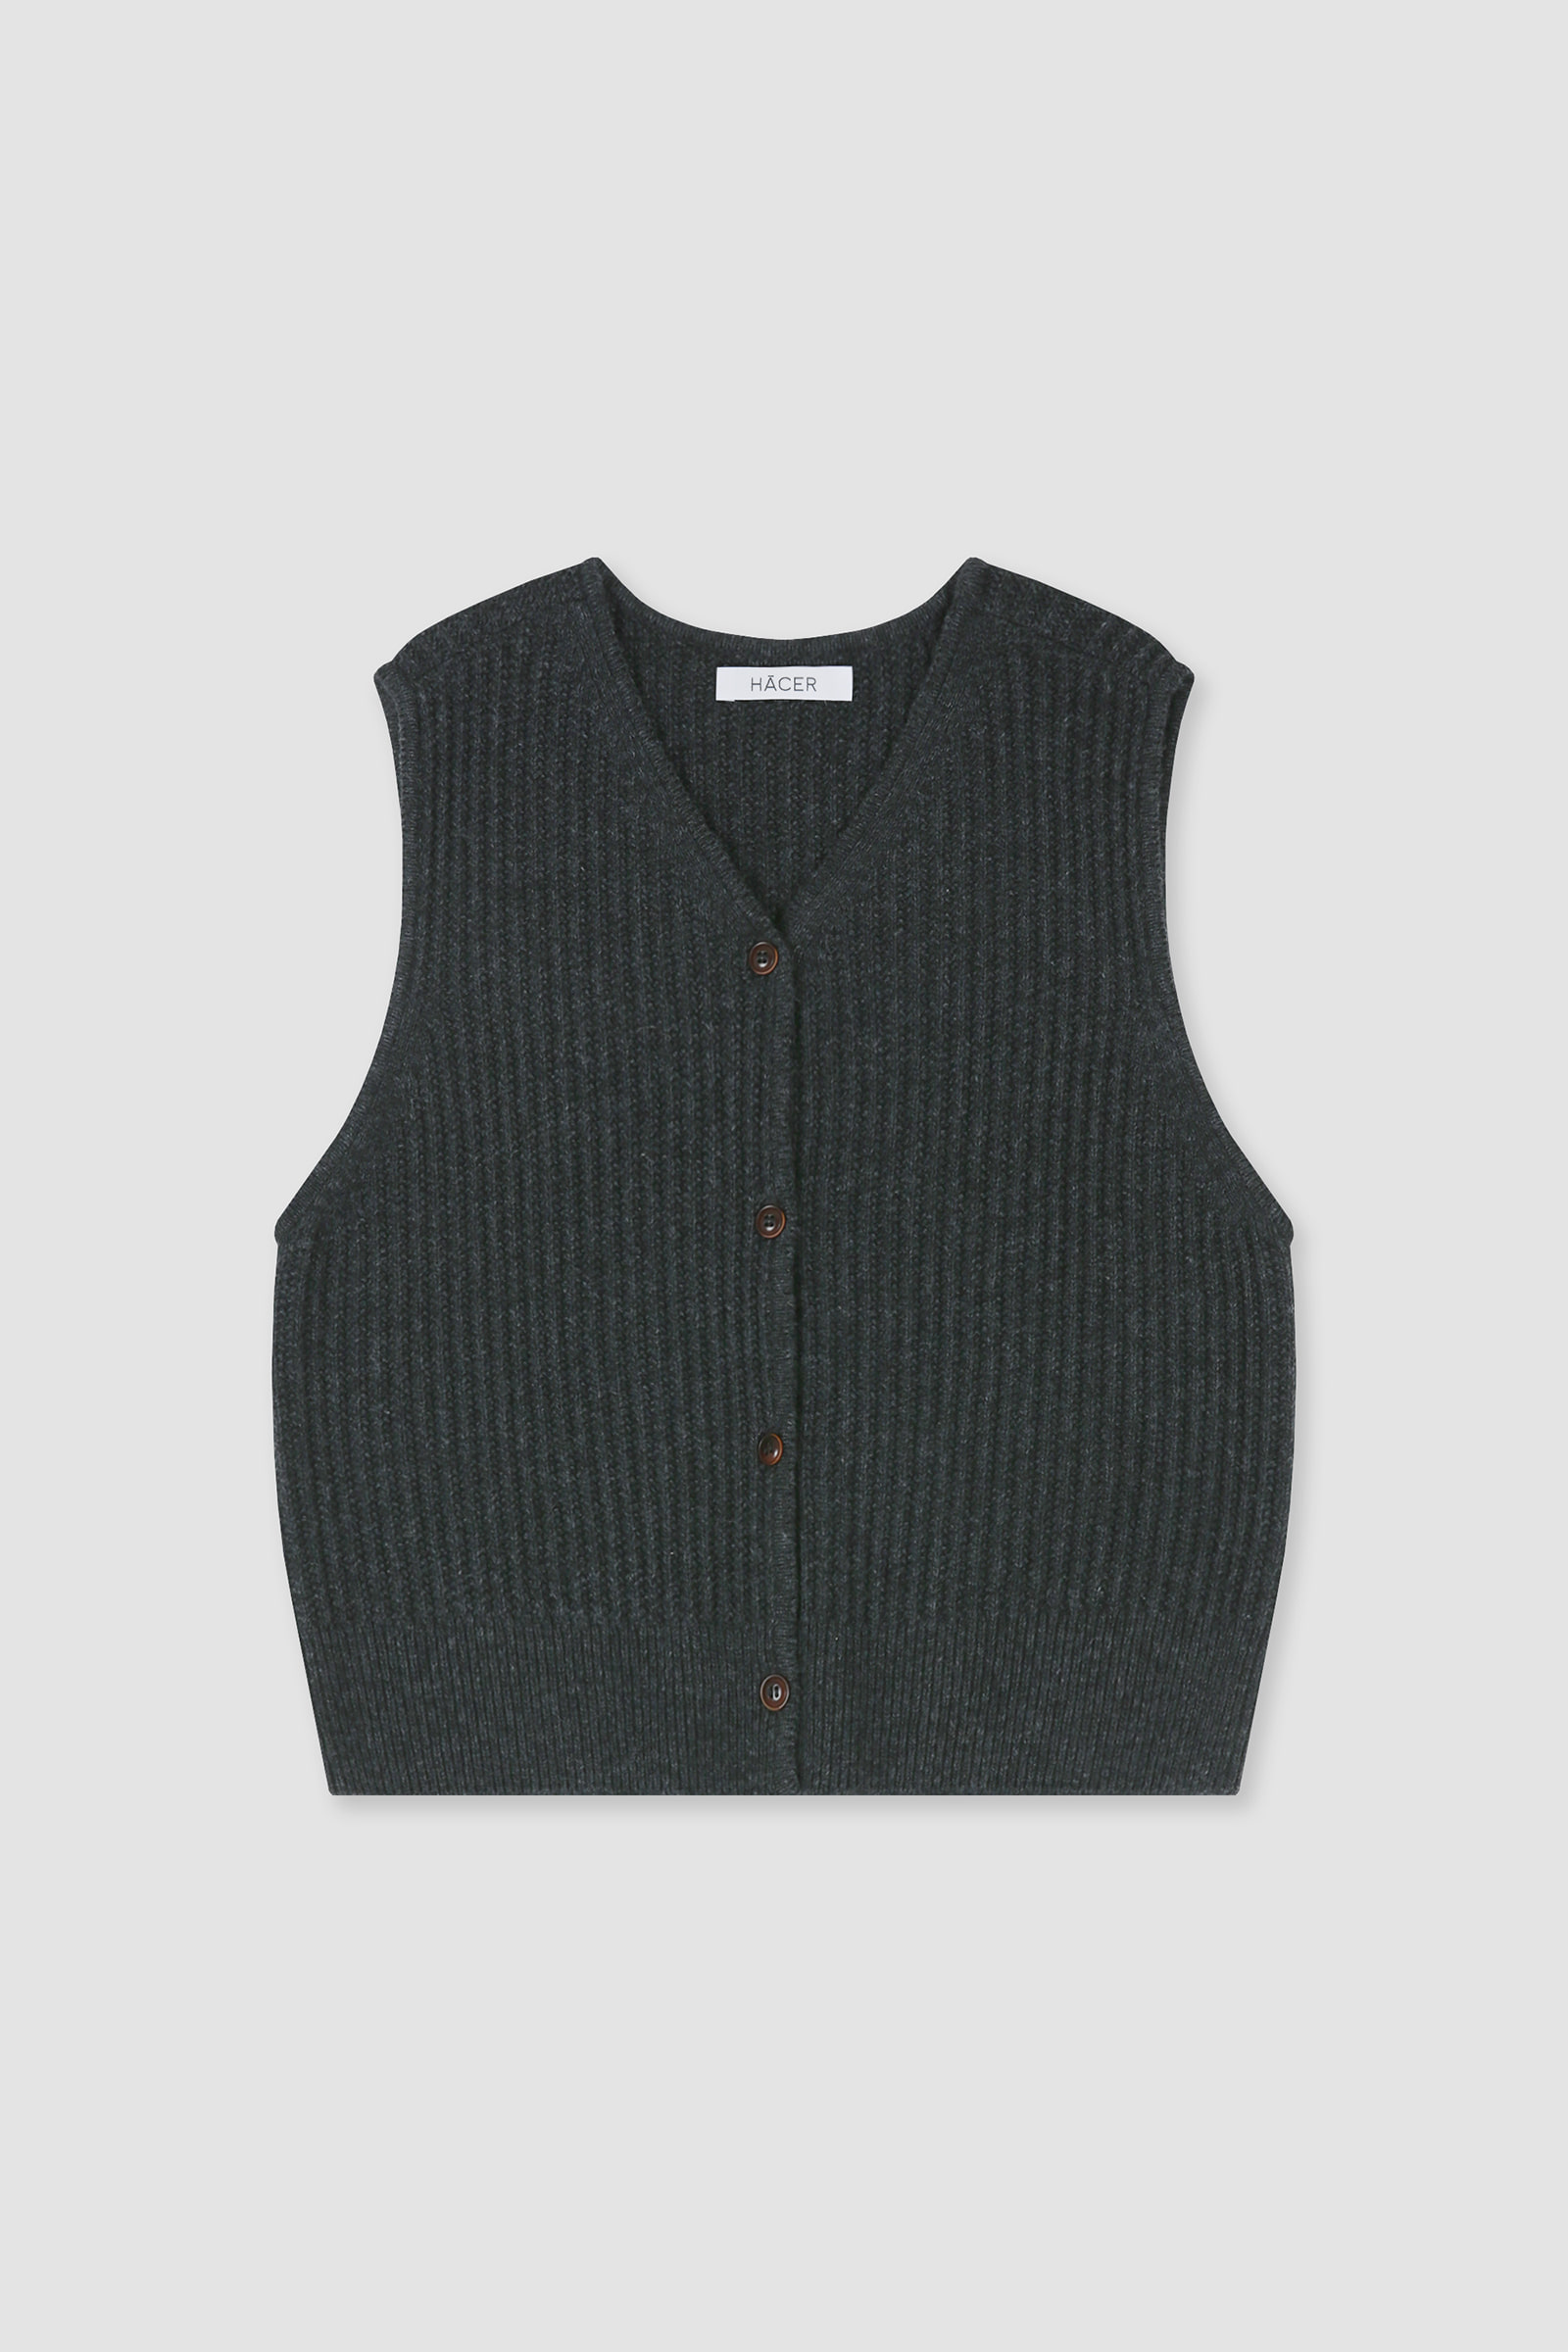 [3rd] Bay Knit Vest